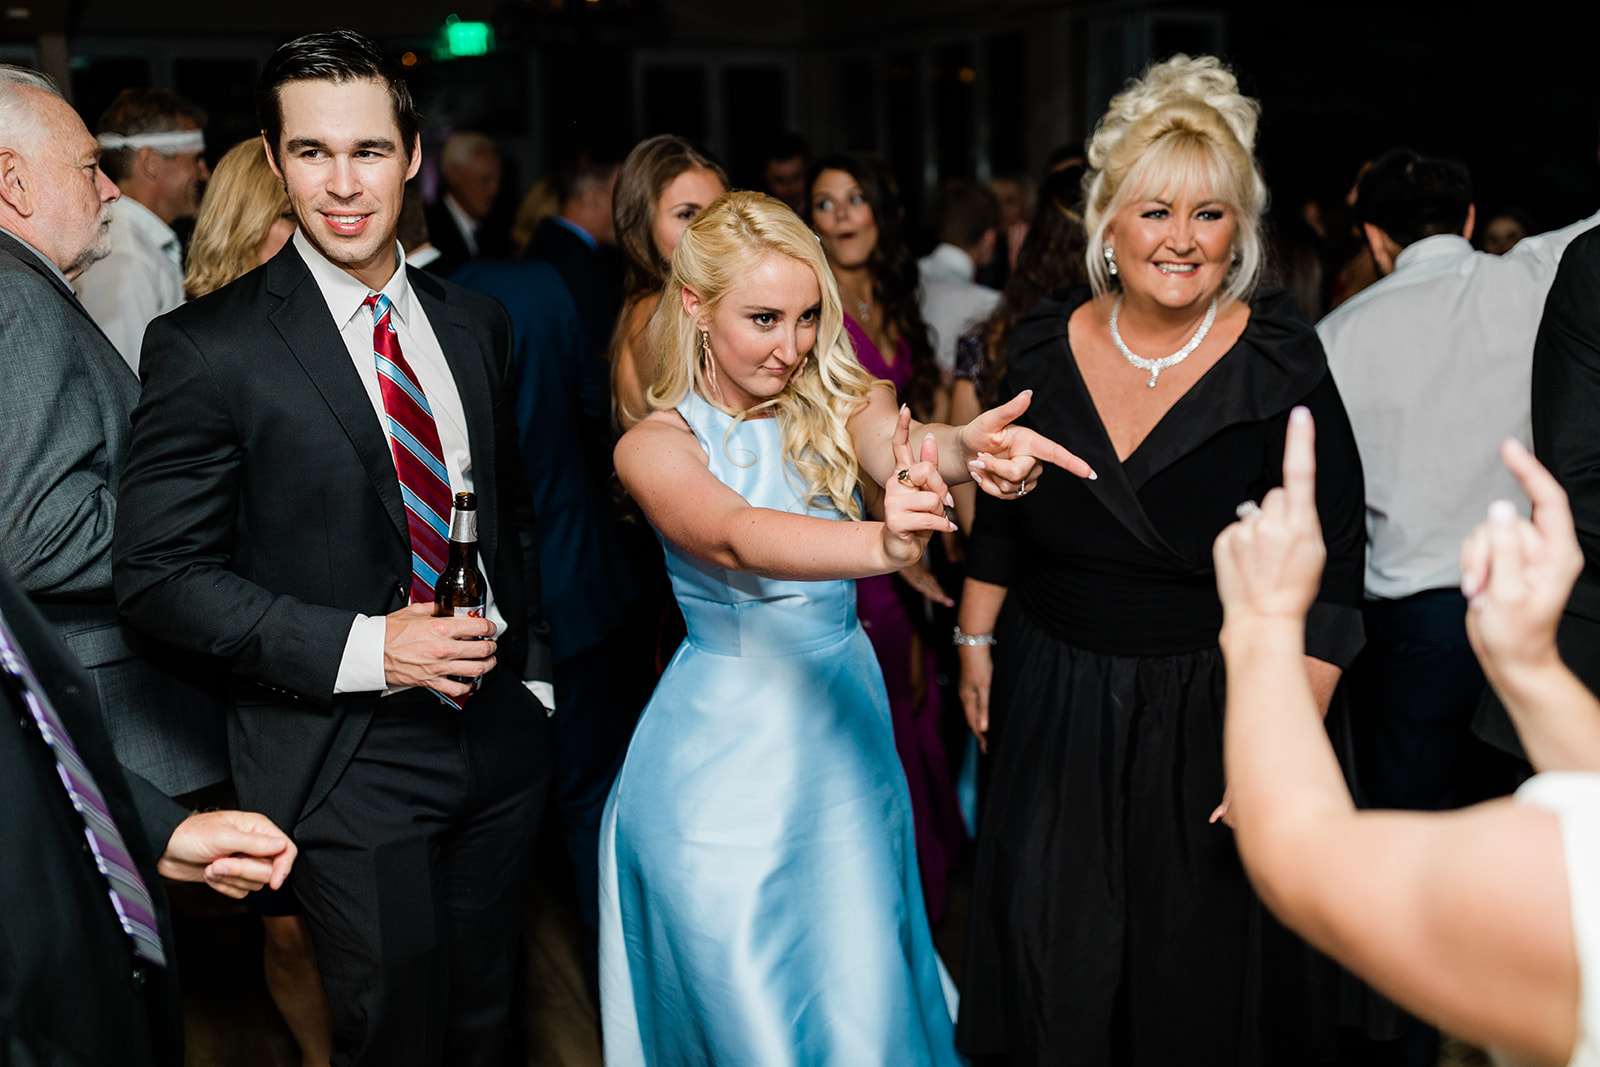 guests dancing at wedding reception in Vail Colorado